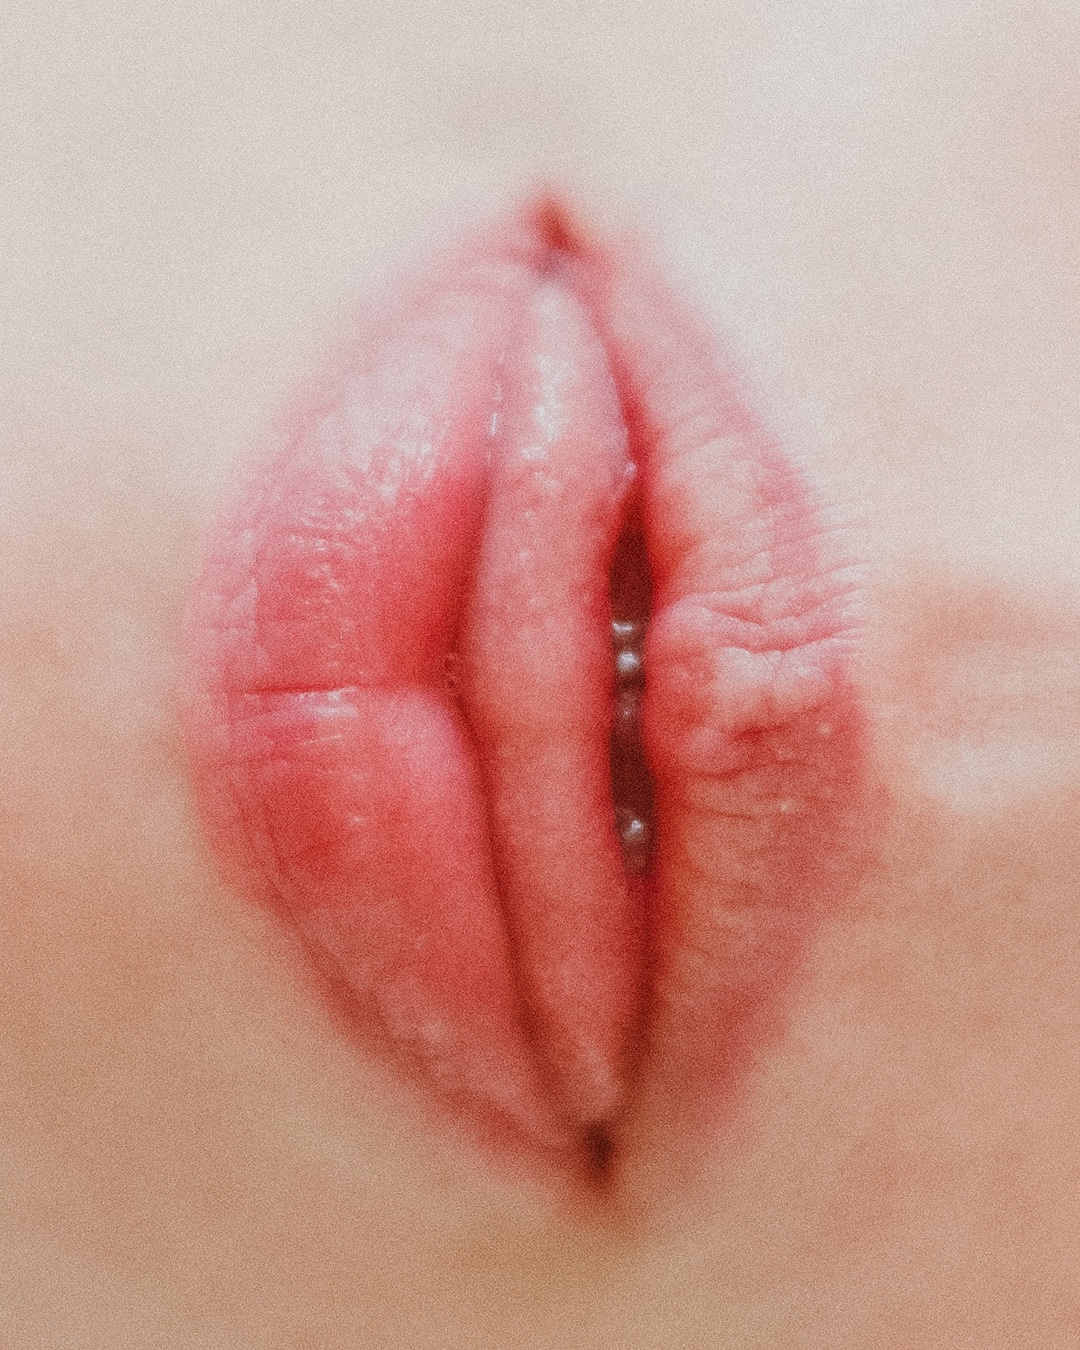 clitoris lips